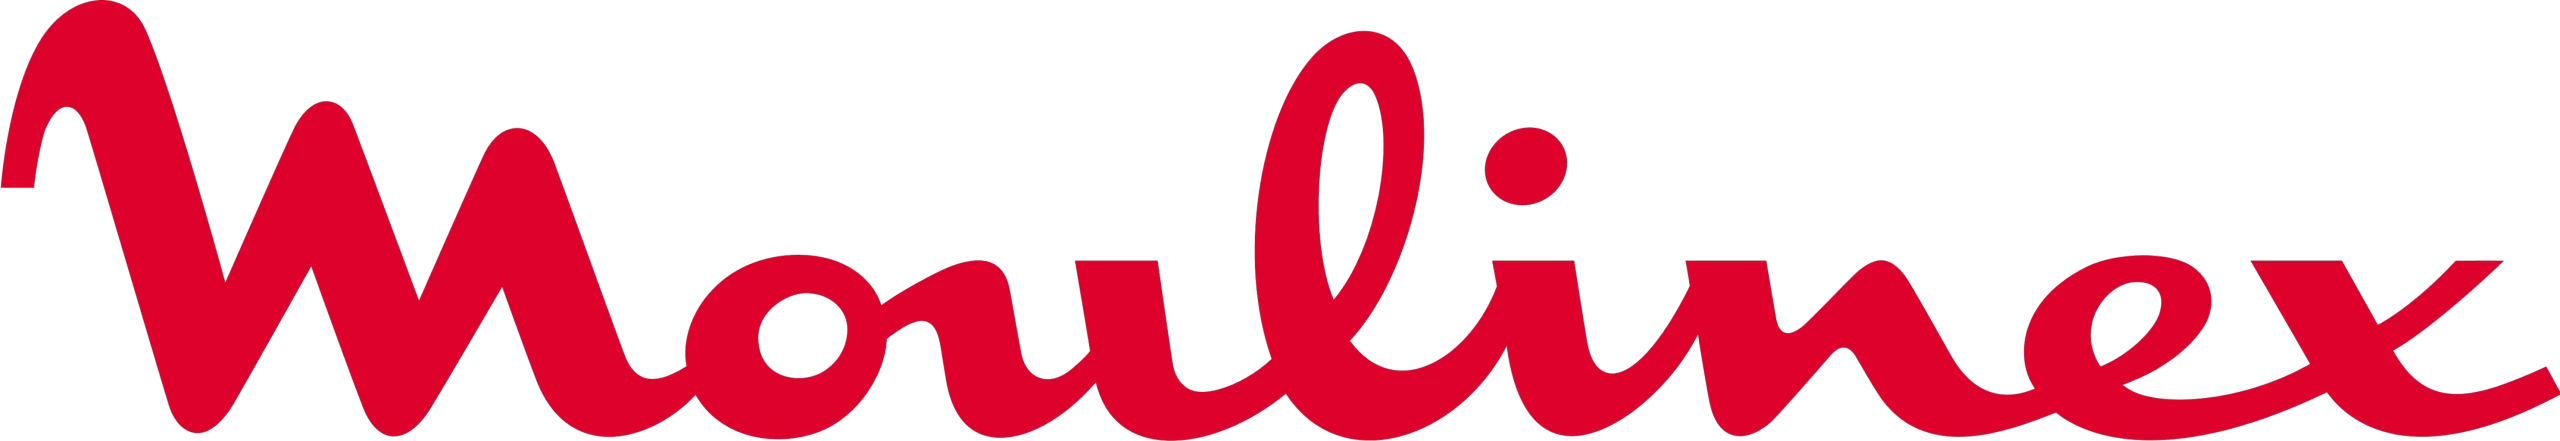 logo moulinex rouge